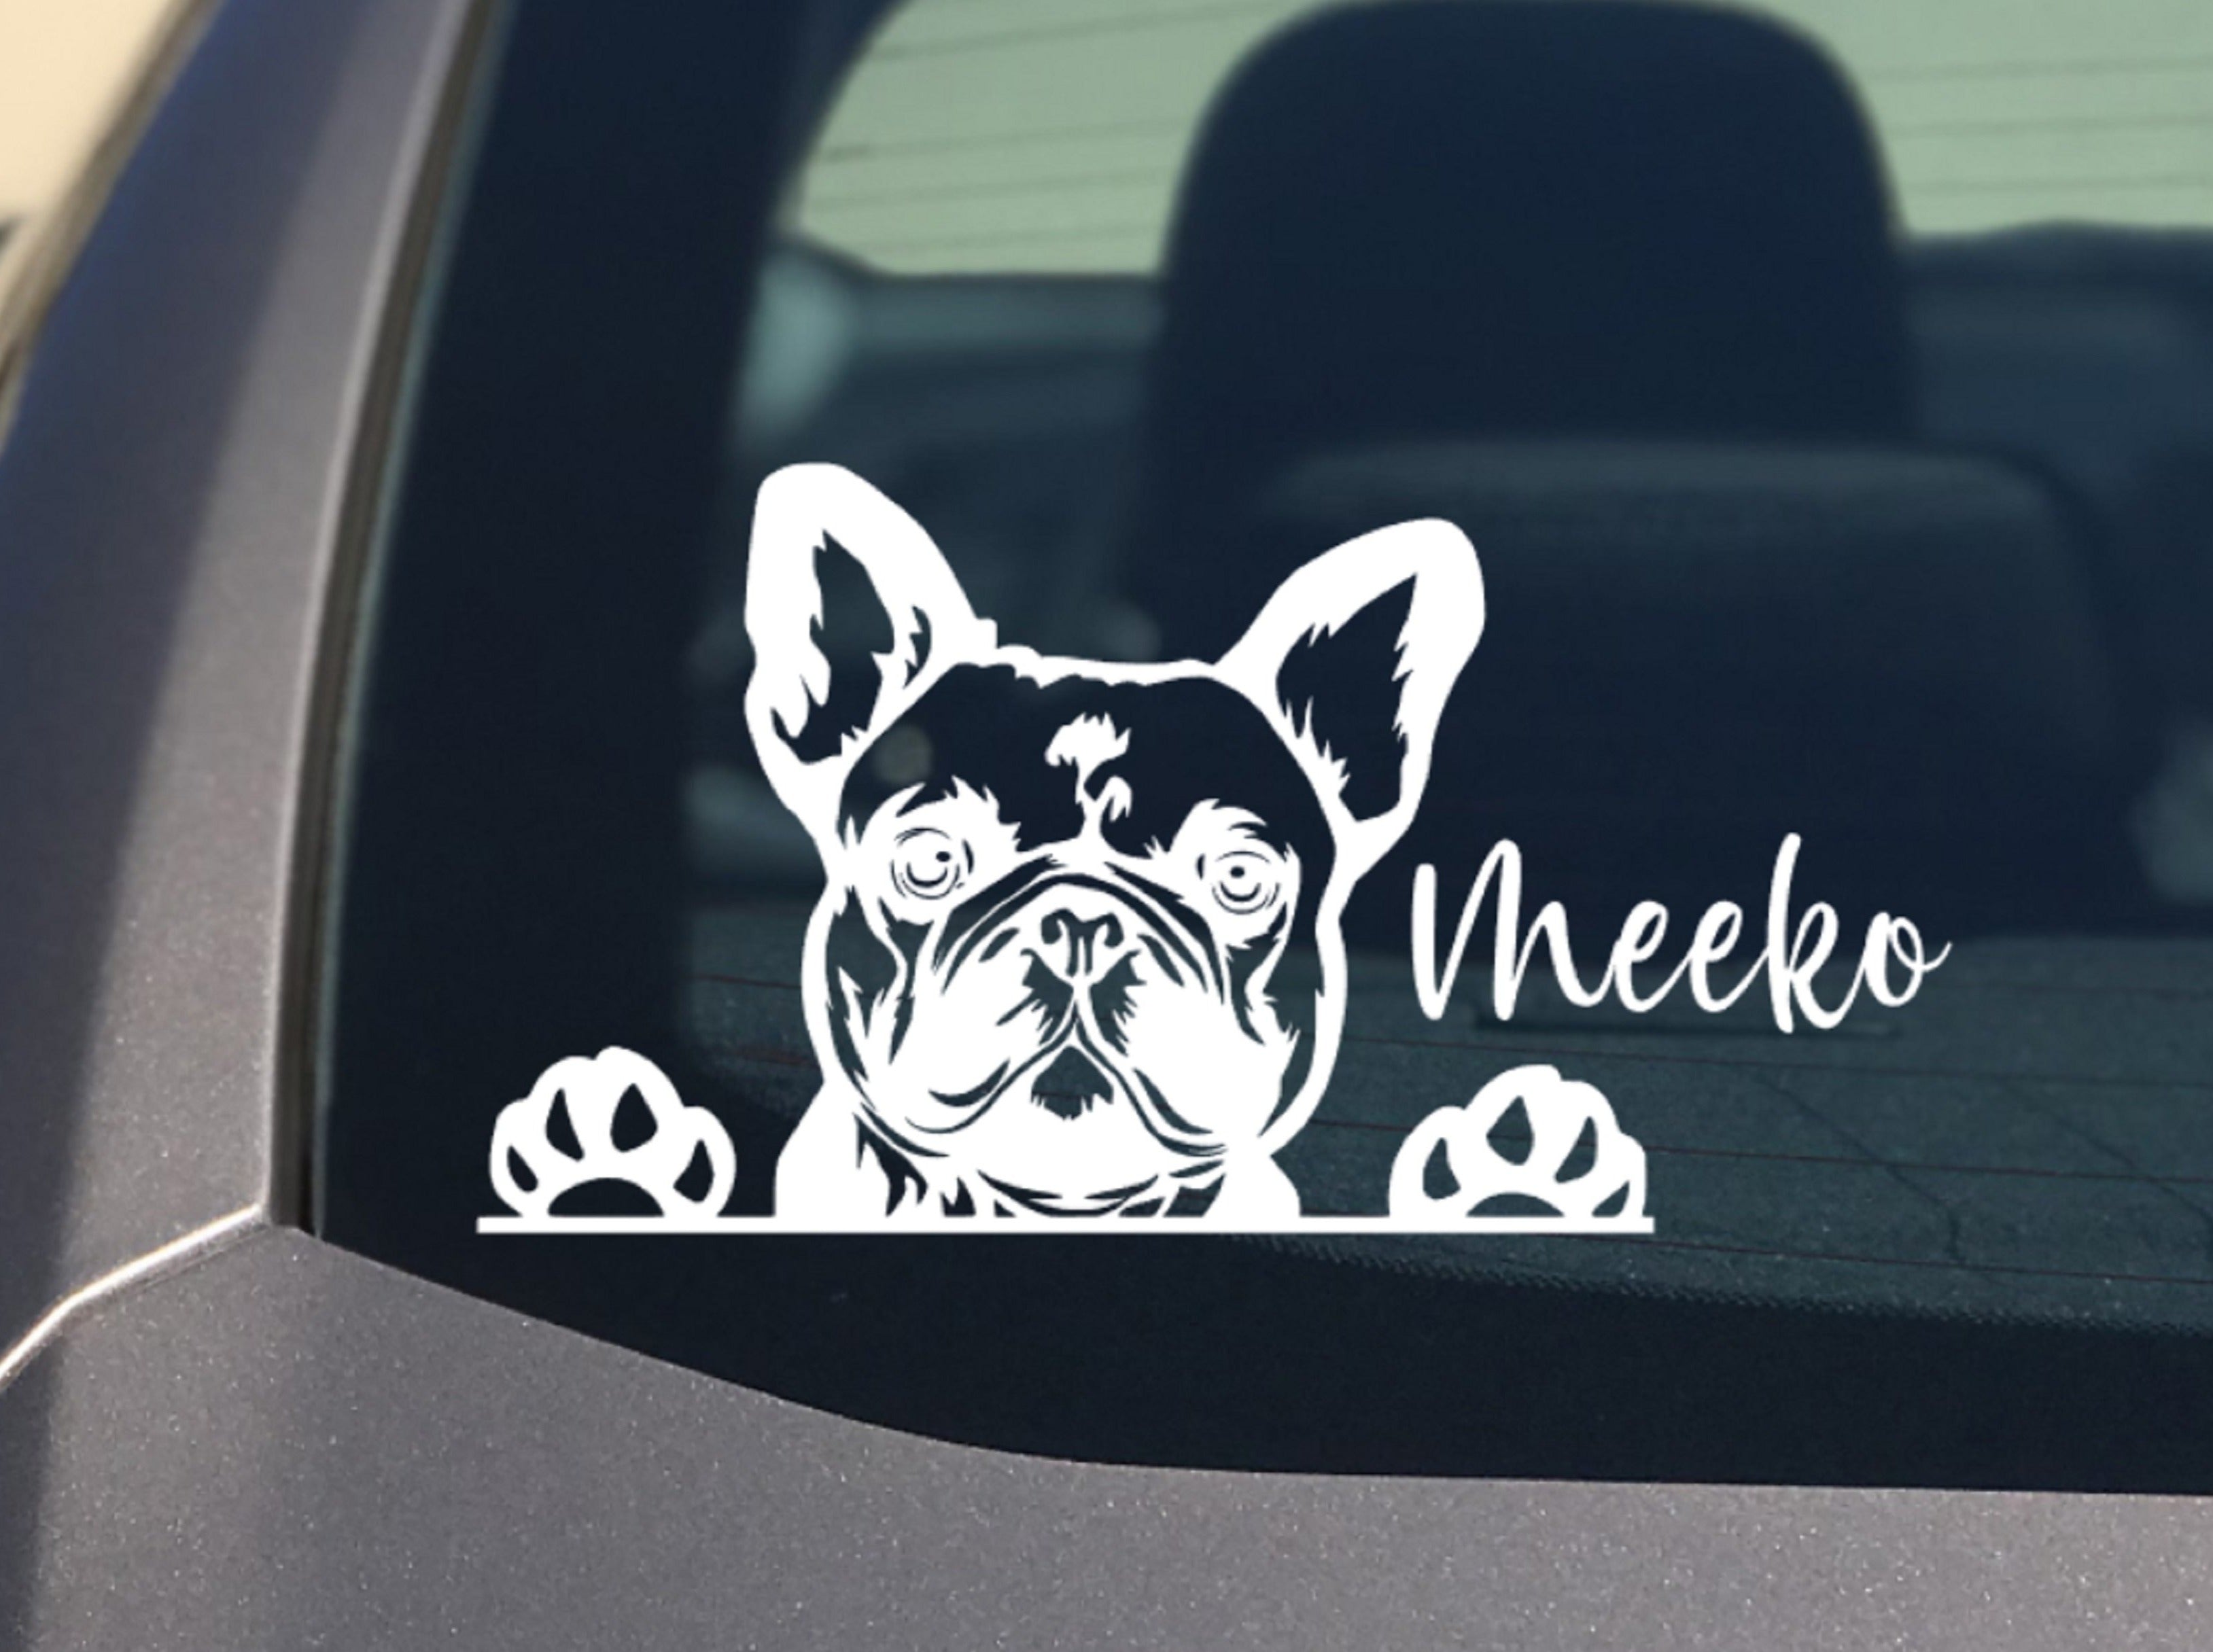 Peeking French Bulldog Car Sticker - My Crafty Dog